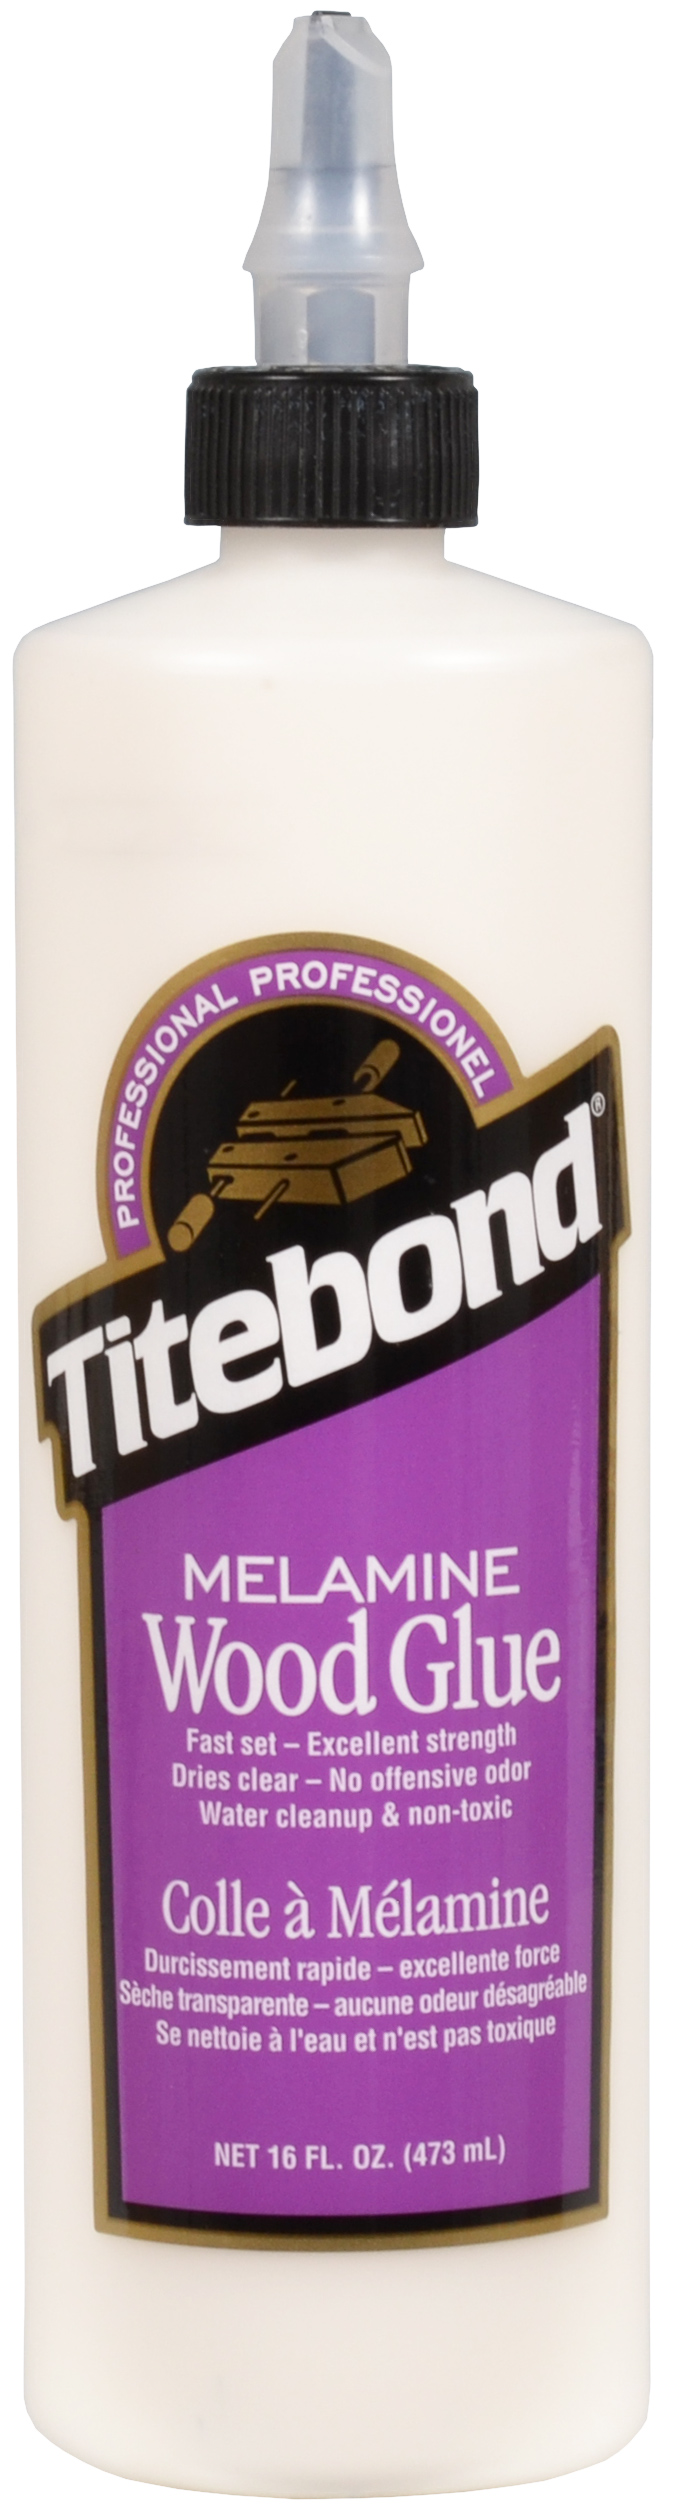 Colle melamine wood glue TITEBOND